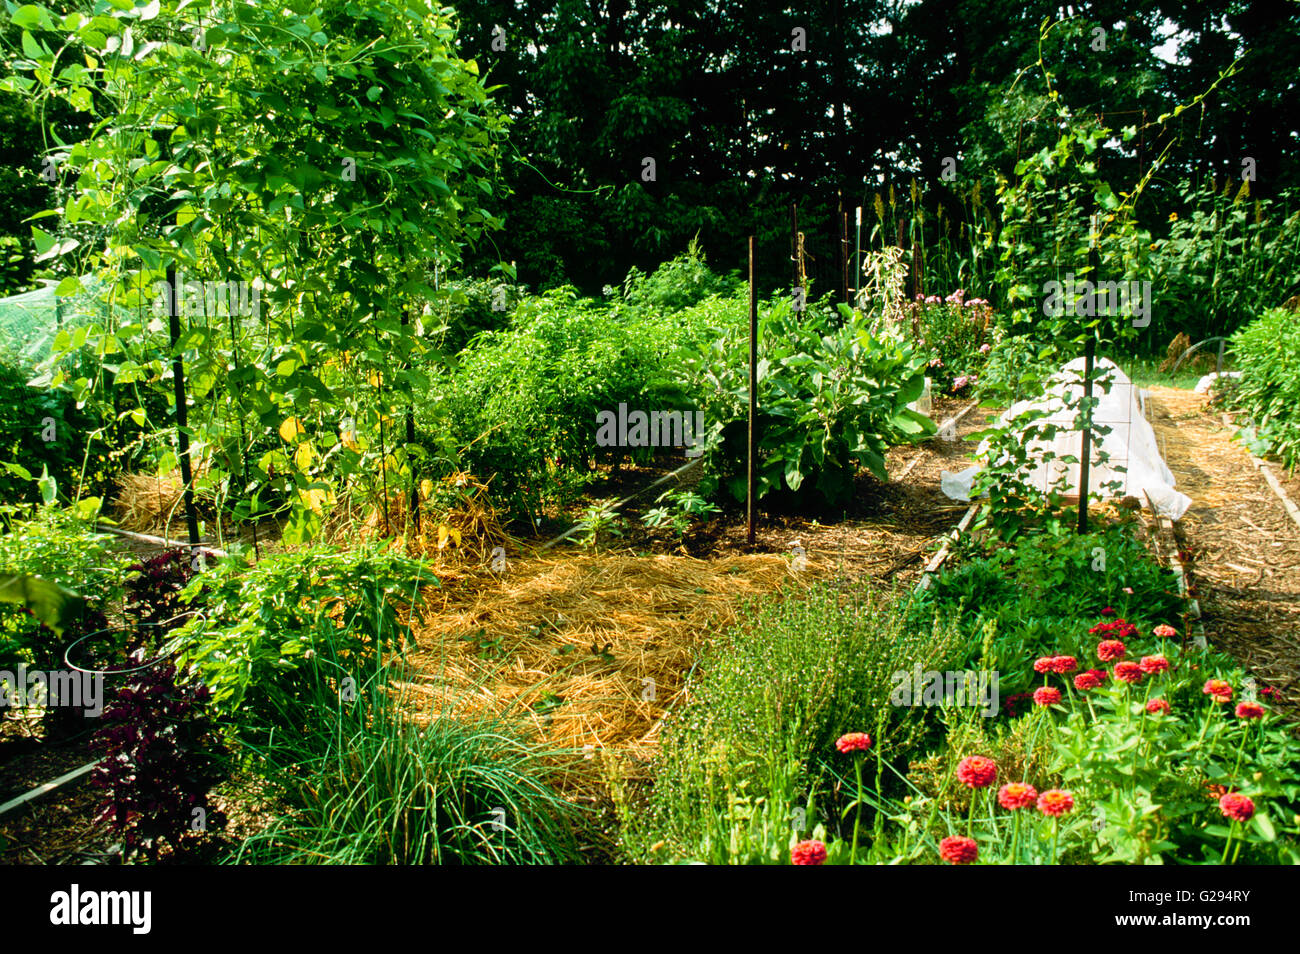 Im Garten im August: Betten von Gemüse und Blumen produzieren mit Reben  nach oben drehte. Pflanzen vor Sonne geschützt und Stockfotografie - Alamy